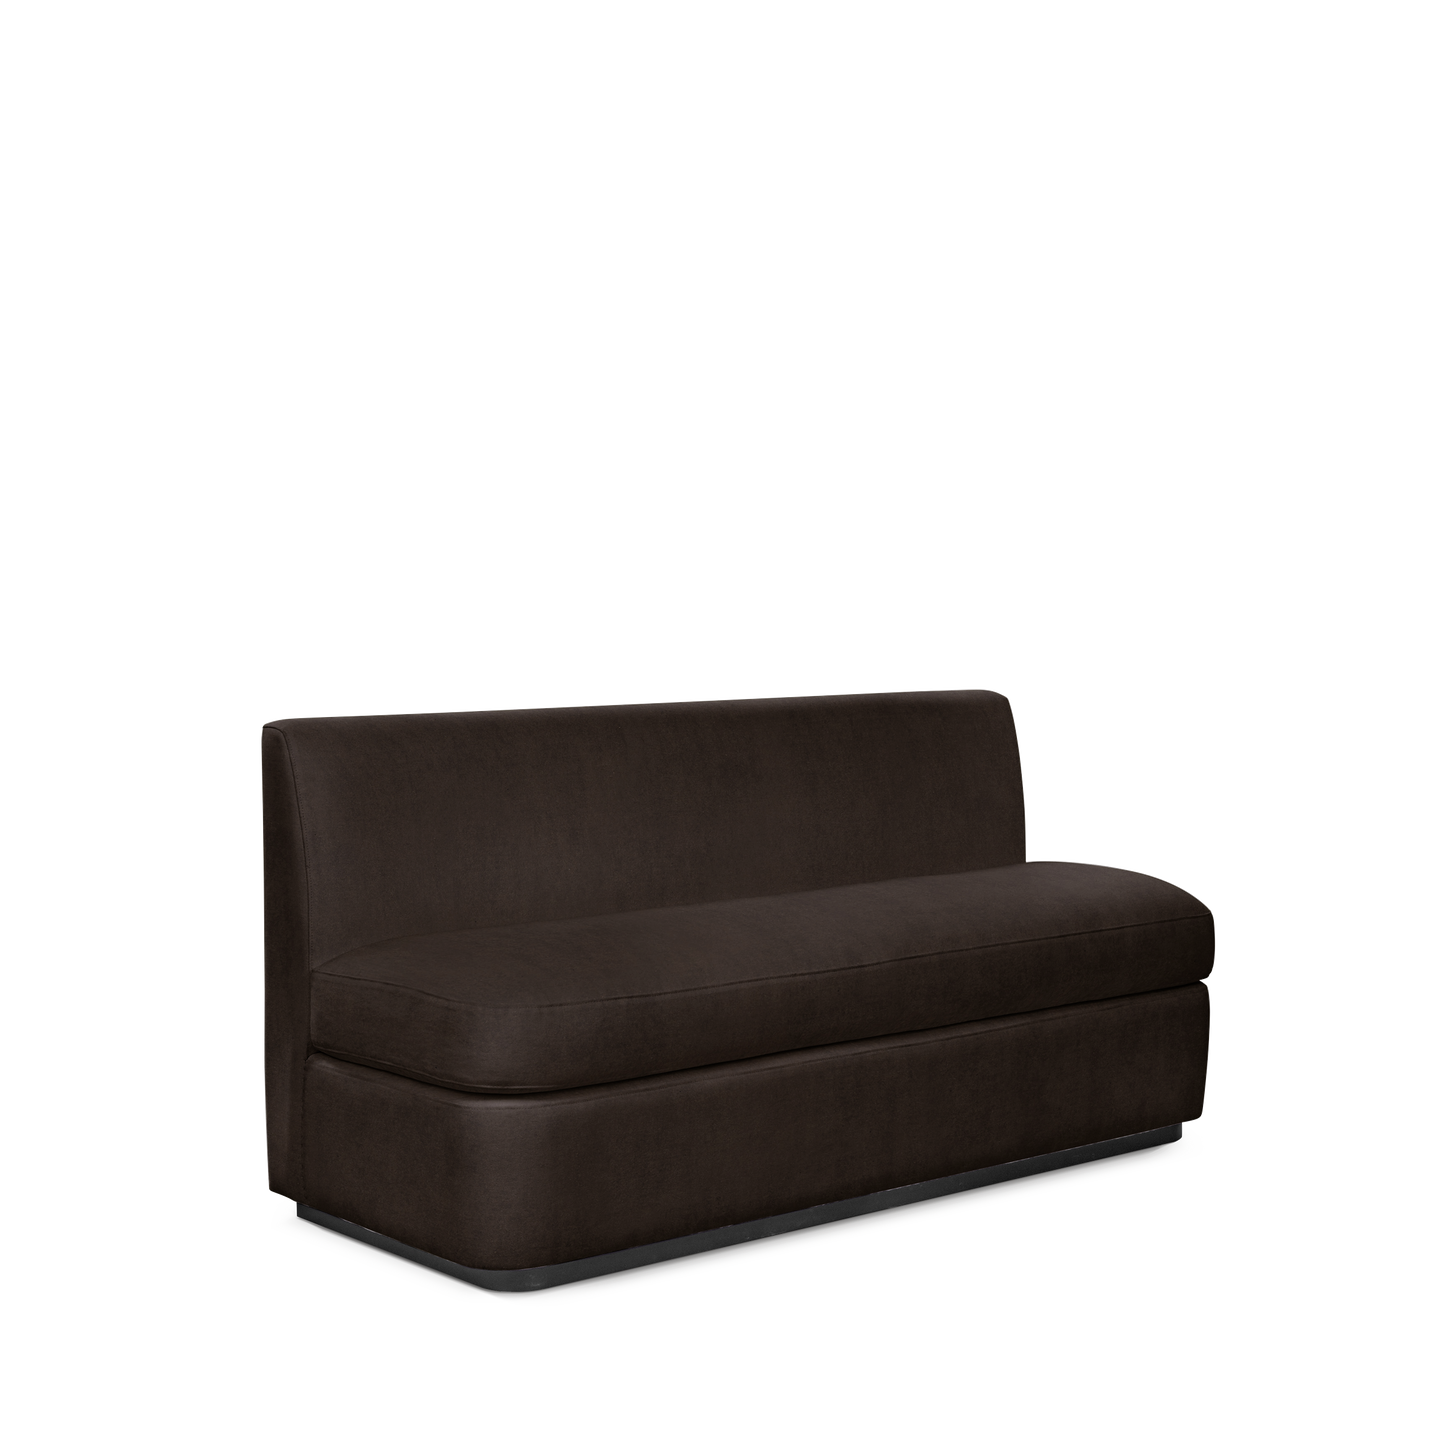  CALMA KITCHEN 3-seater sofa with London dark brown textile